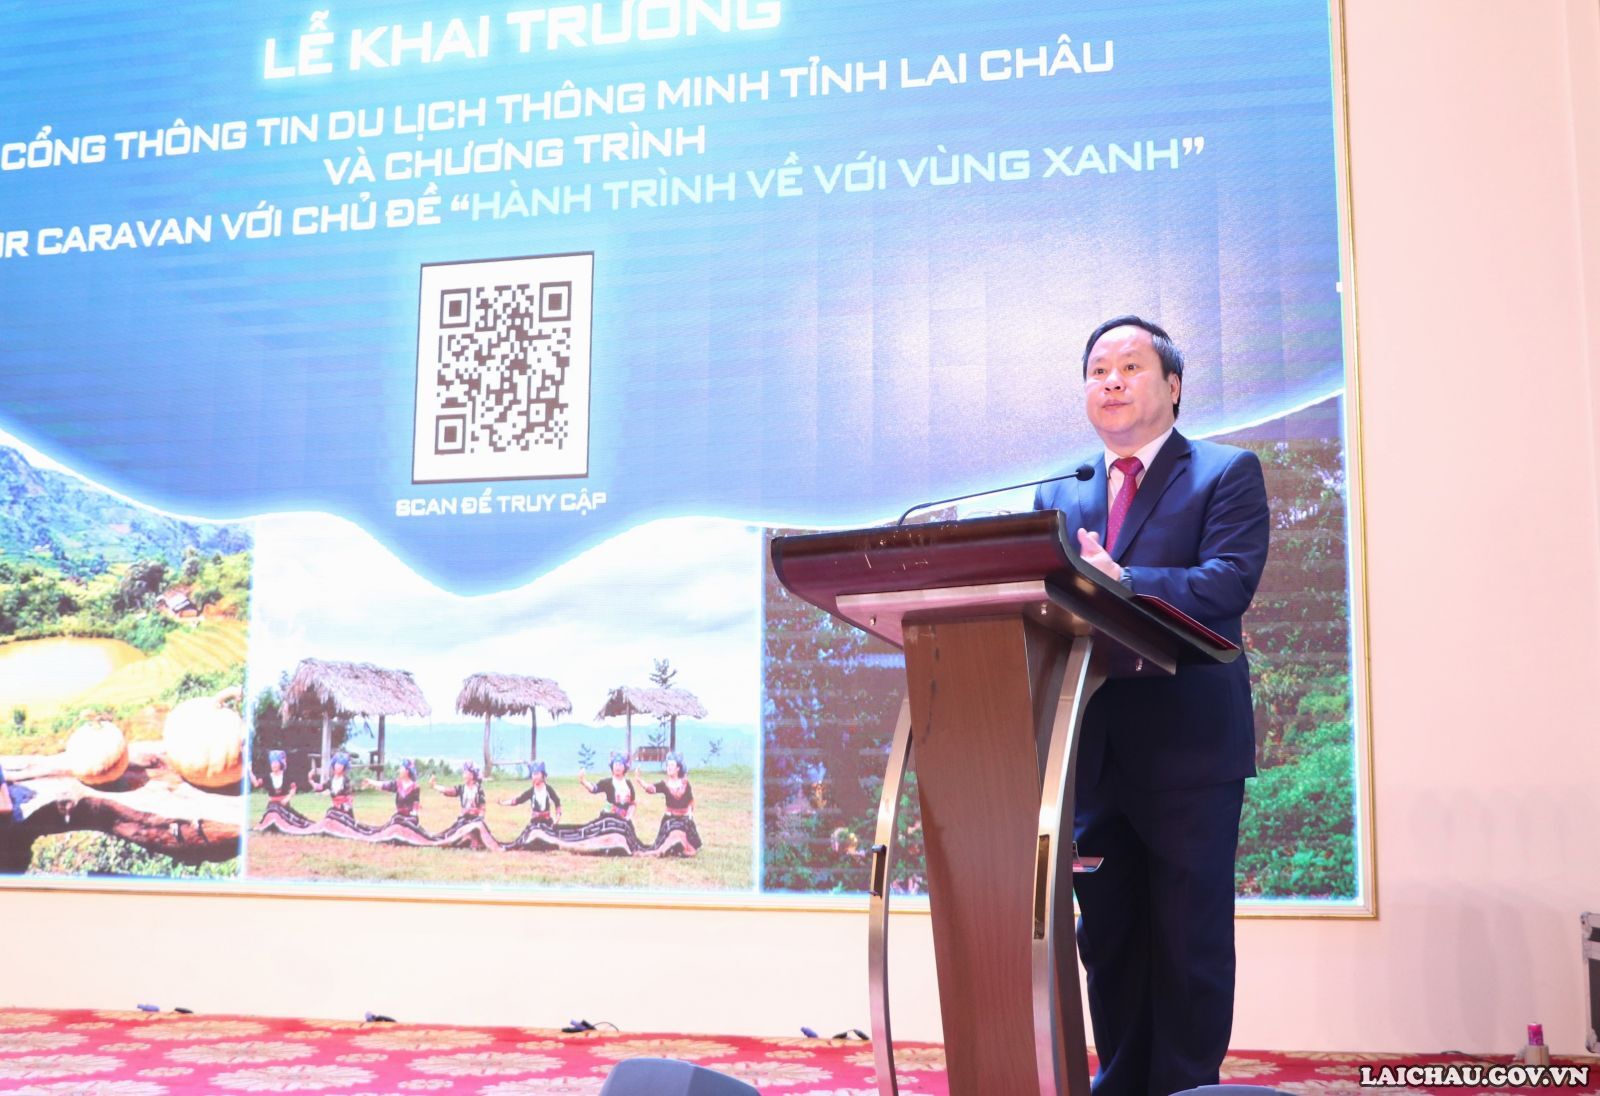 Phó Chủ tịch Thường trực UBND tỉnh Lai Châu Tống Thanh Hải phát biểu tại buổi lễ